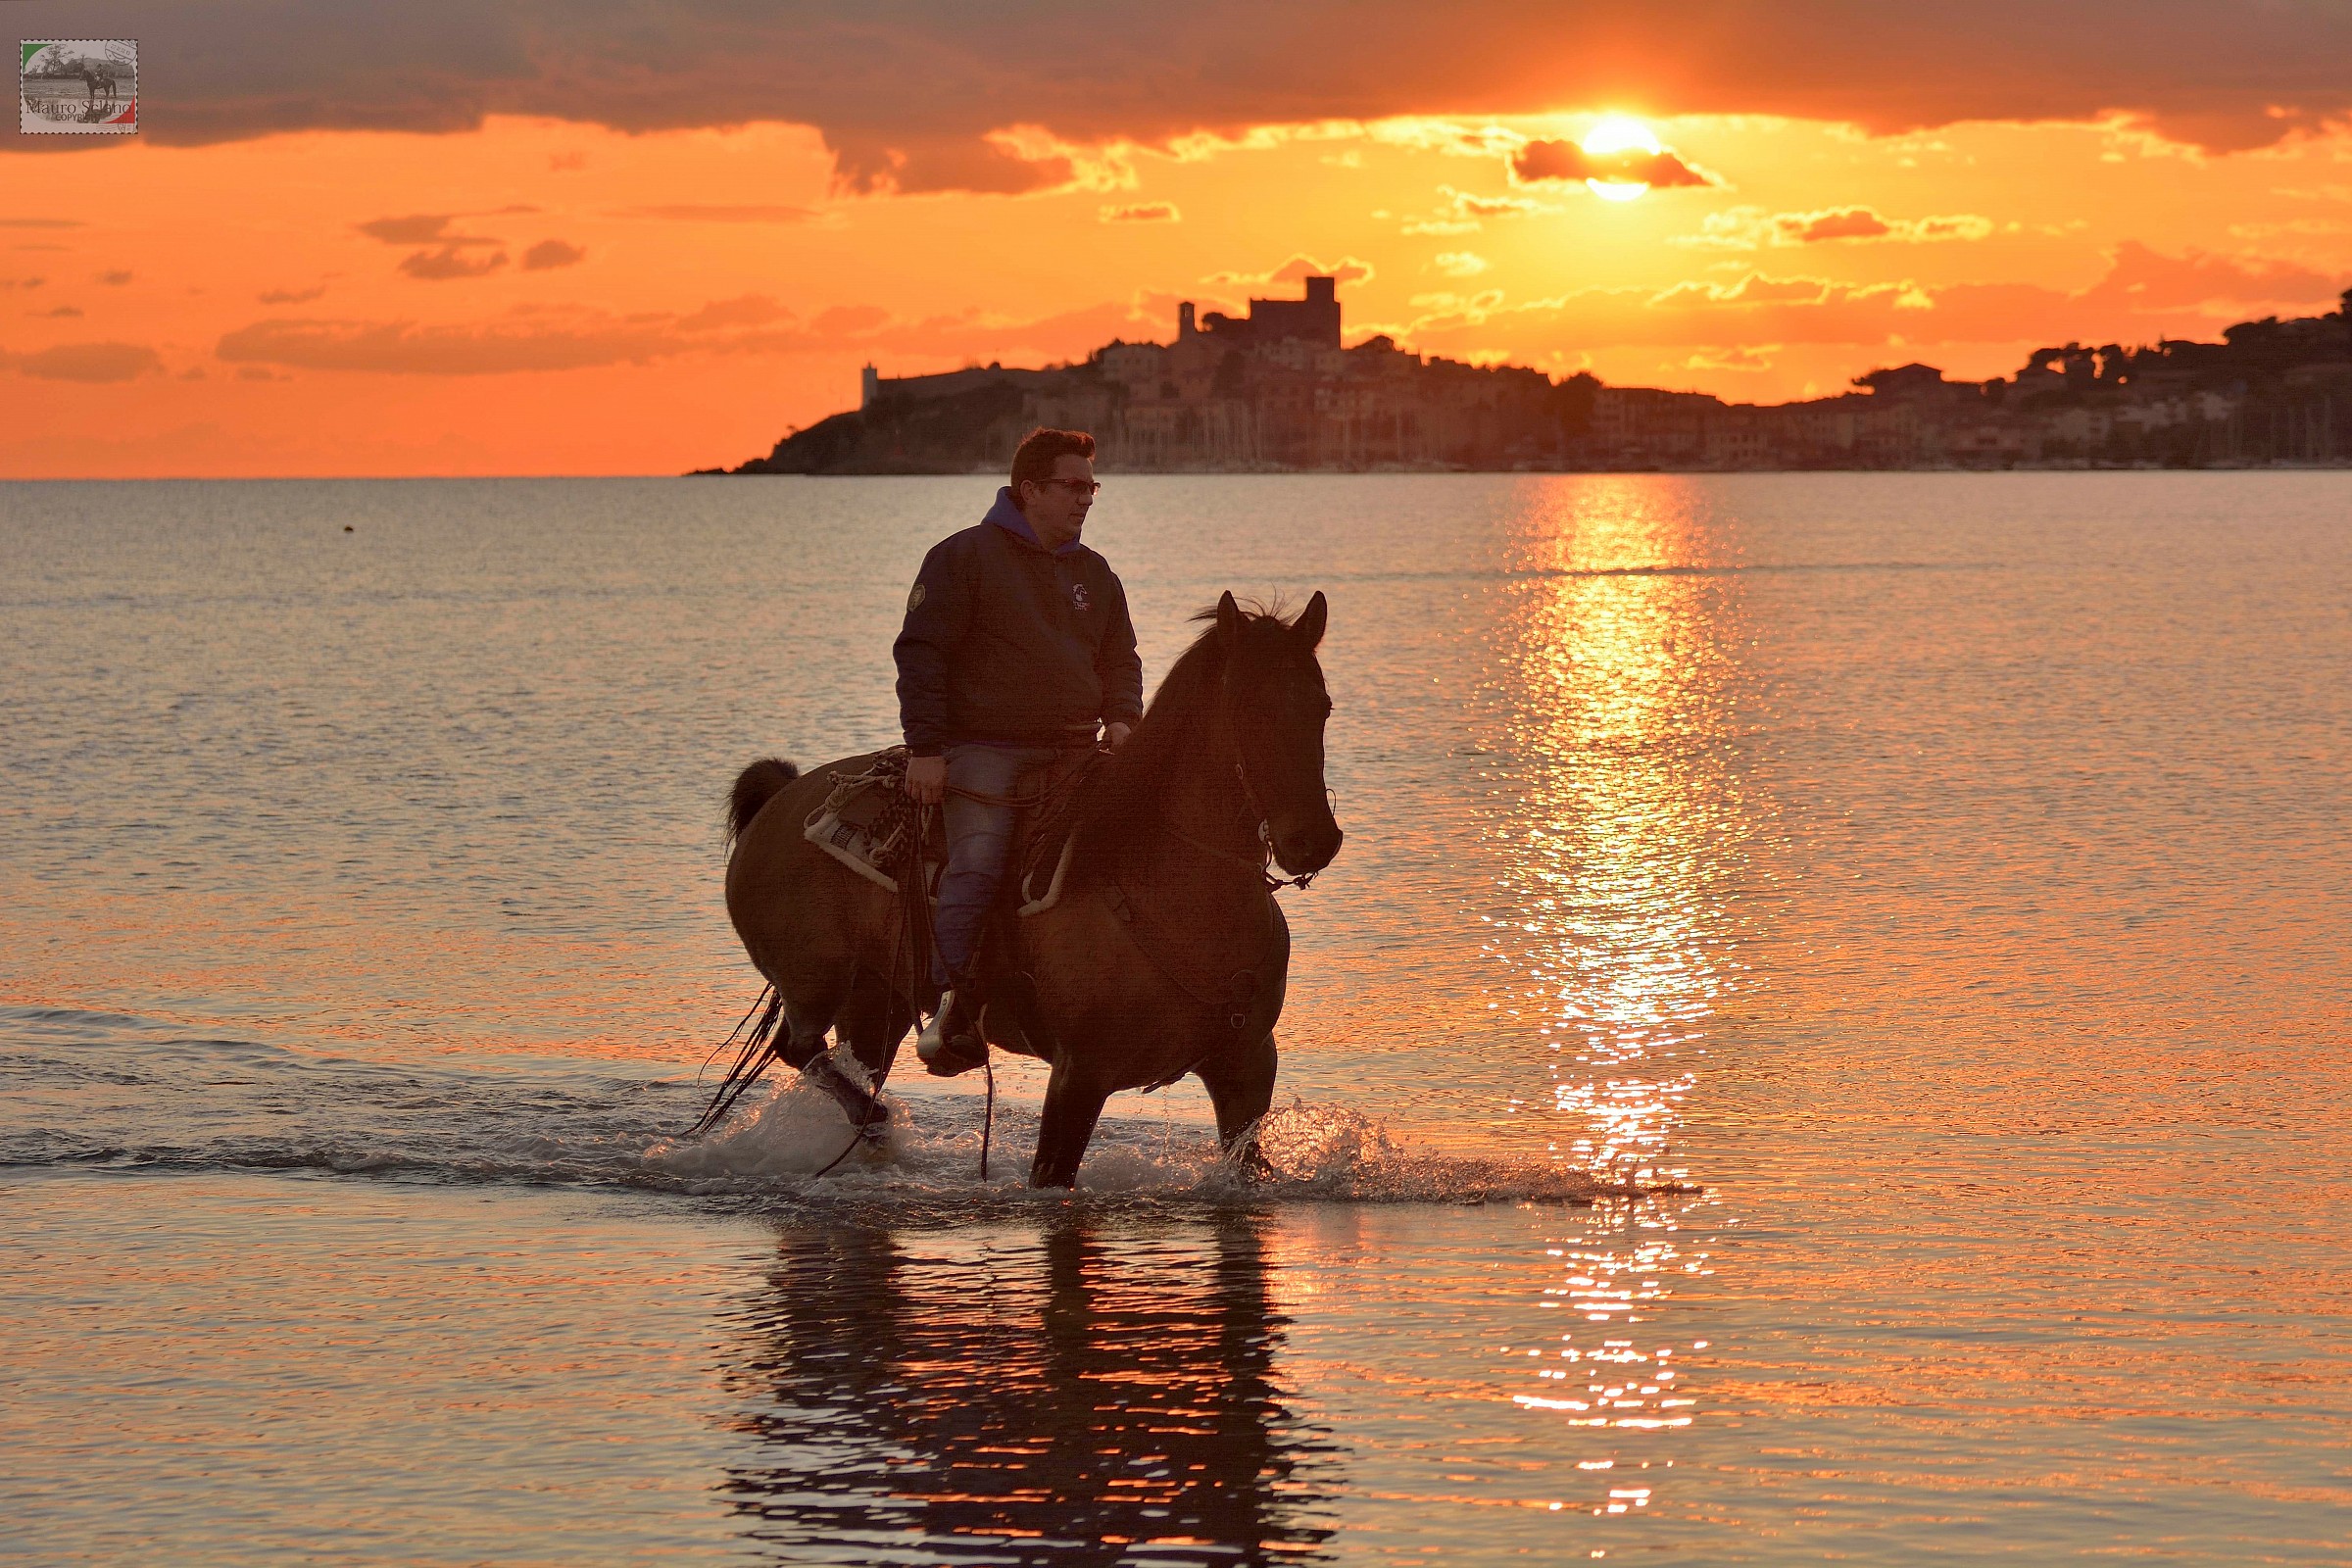 Talamone sunset on horseback...